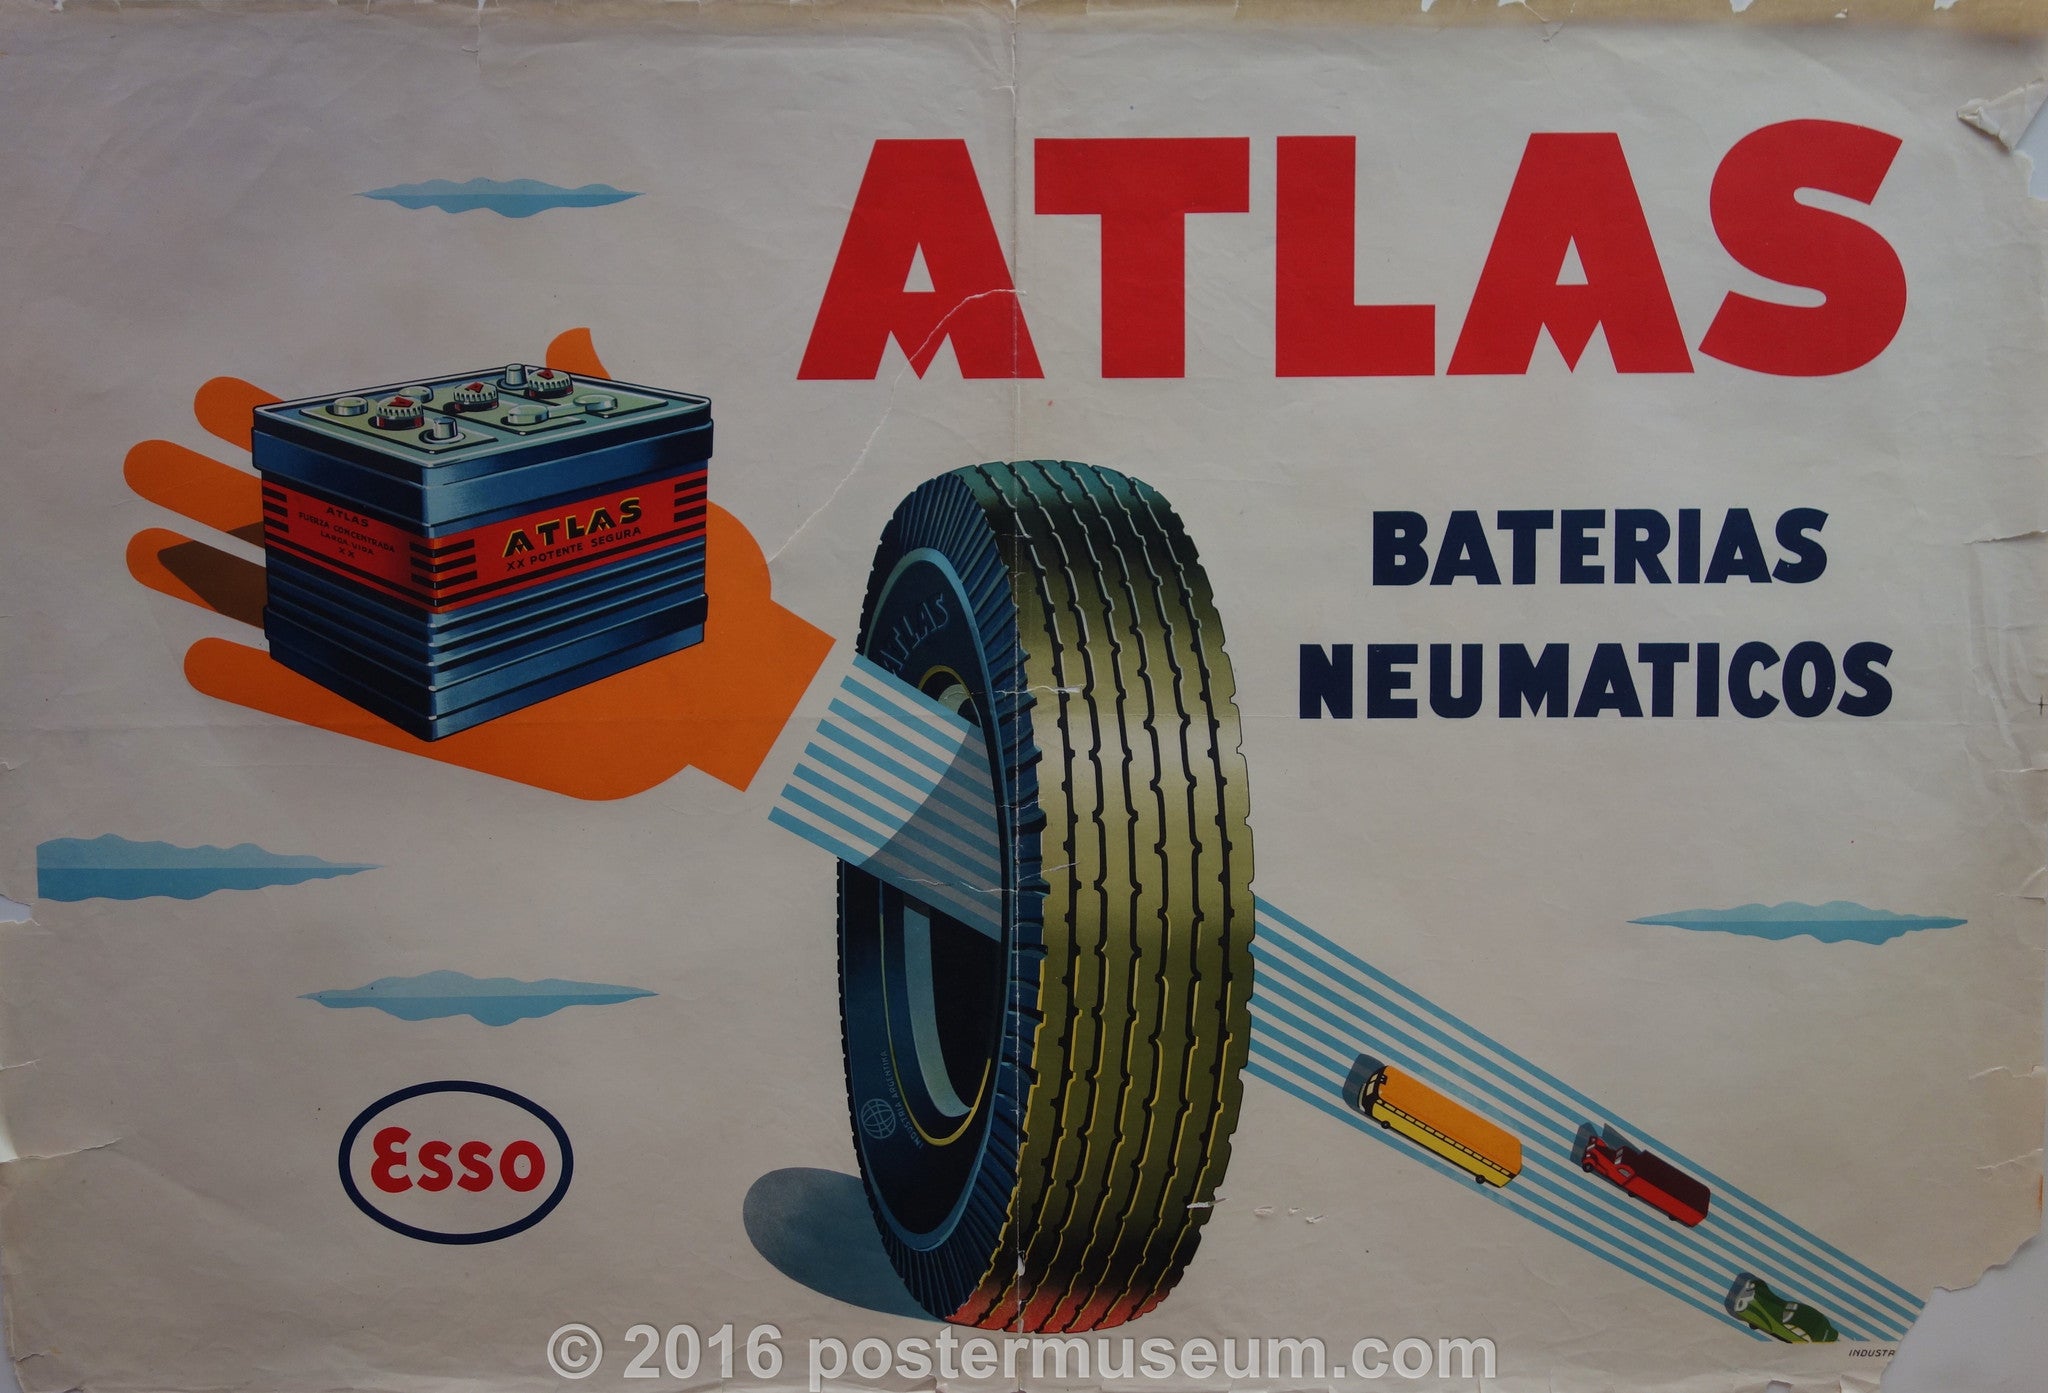 Atlas Baterias Neumaticos